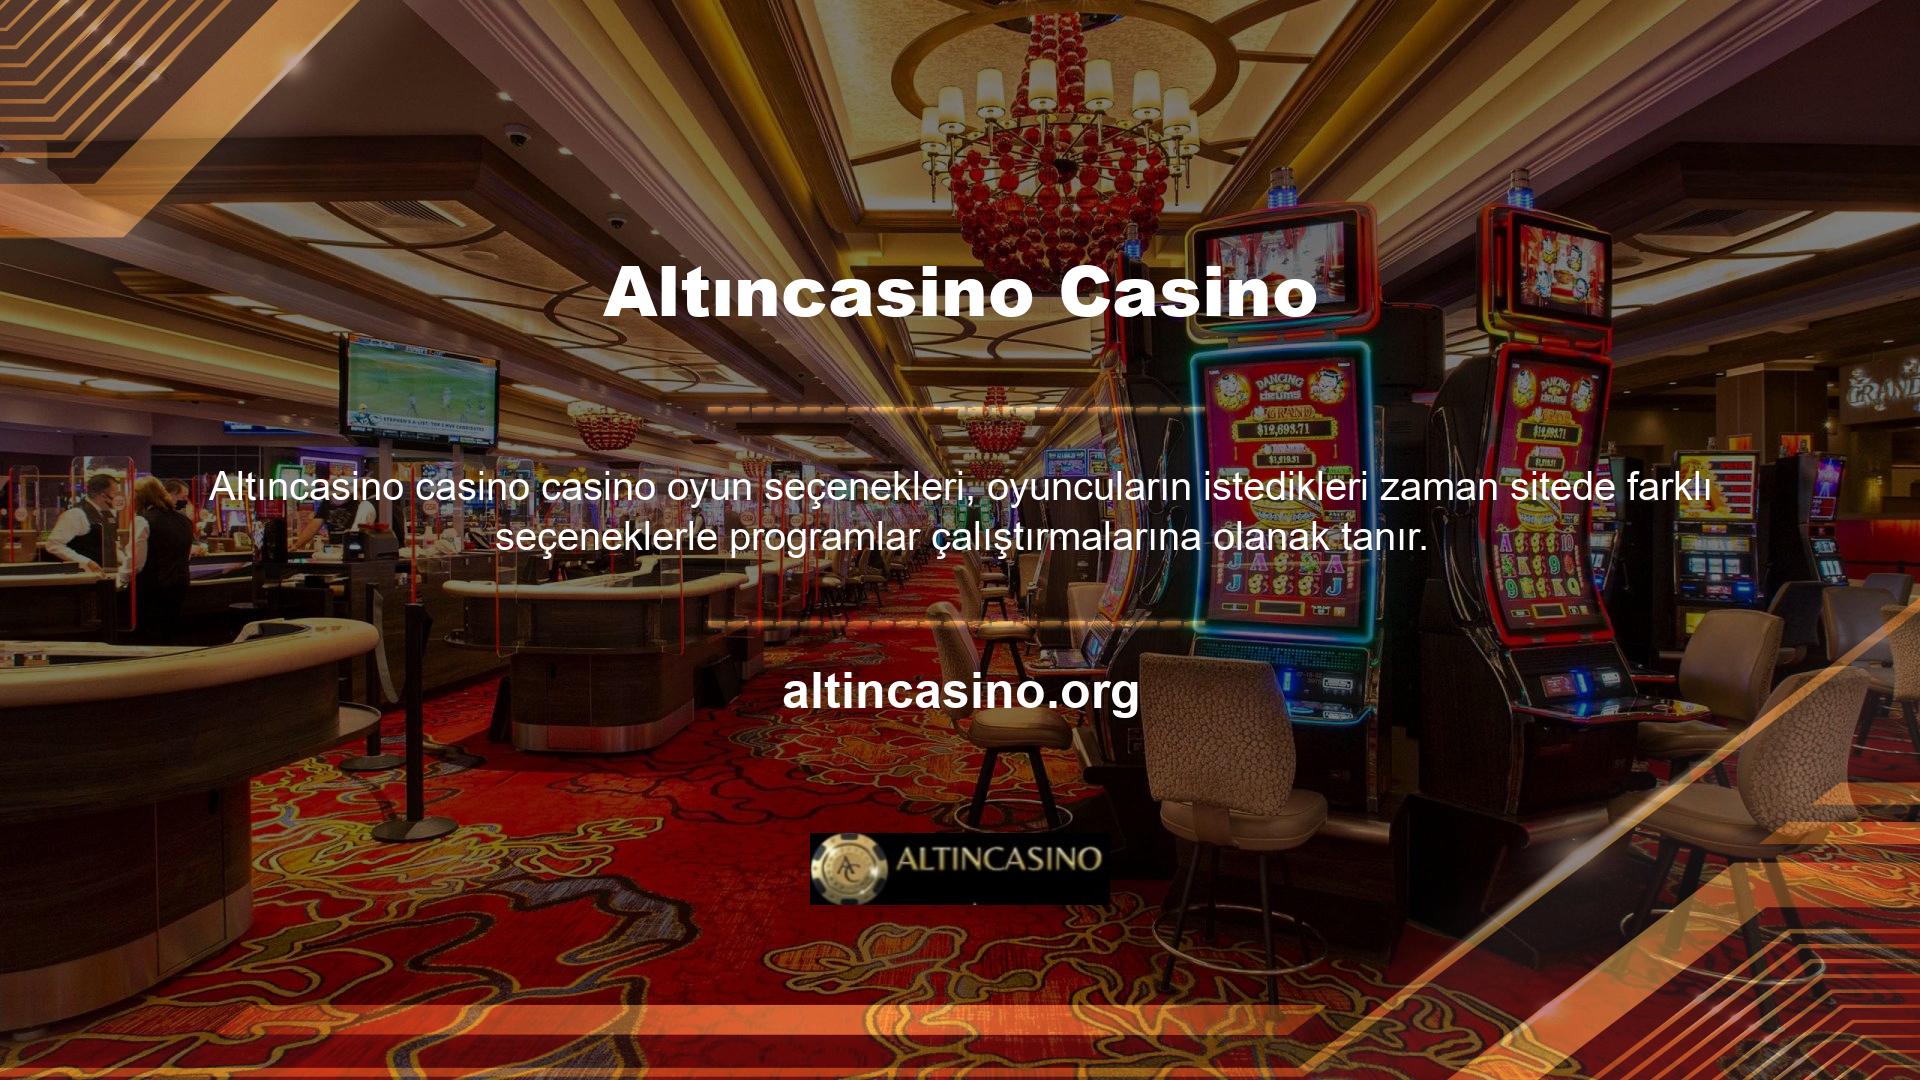 Casino oyun seçeneklerini değerlendirmeden önce, oyuncunun Altıncasino Casino'da kazanıp kazanamayacağını kendilerine sordular